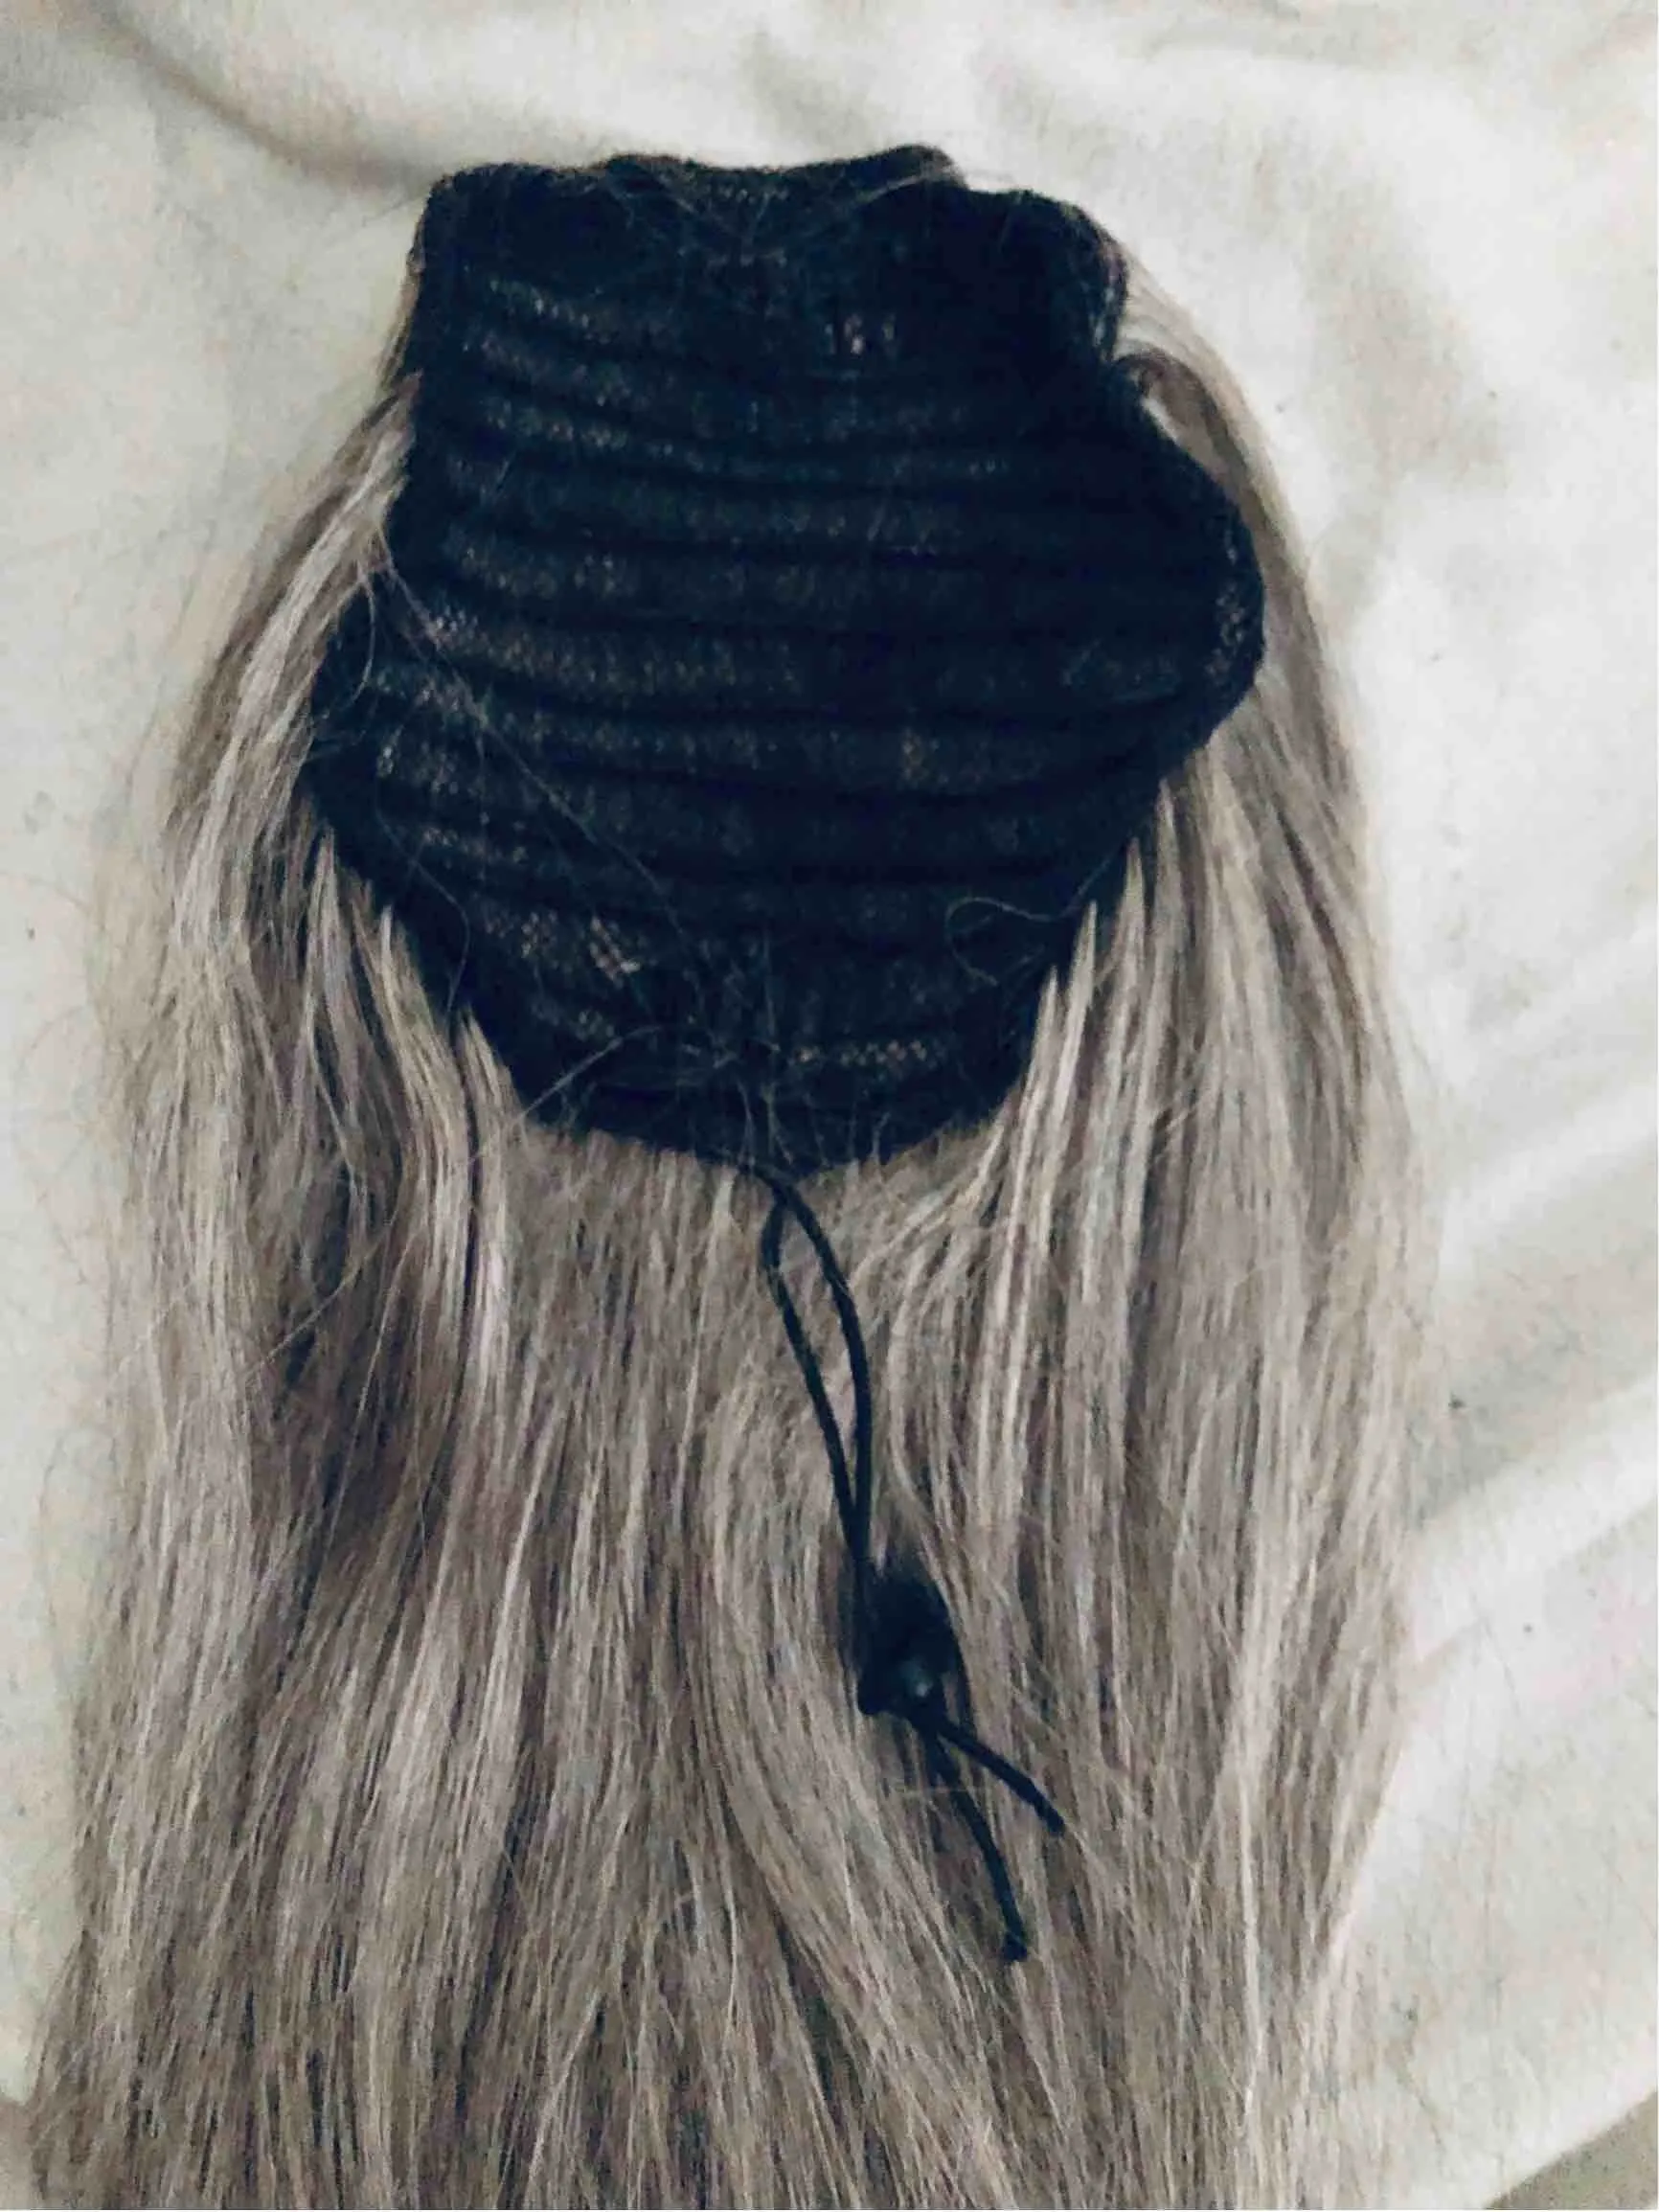 灰色の人間の髪のポニーテールヘアピース塩nペッパーナチュラルエクステングレー織りポニーテールバンドル120gラップラップ